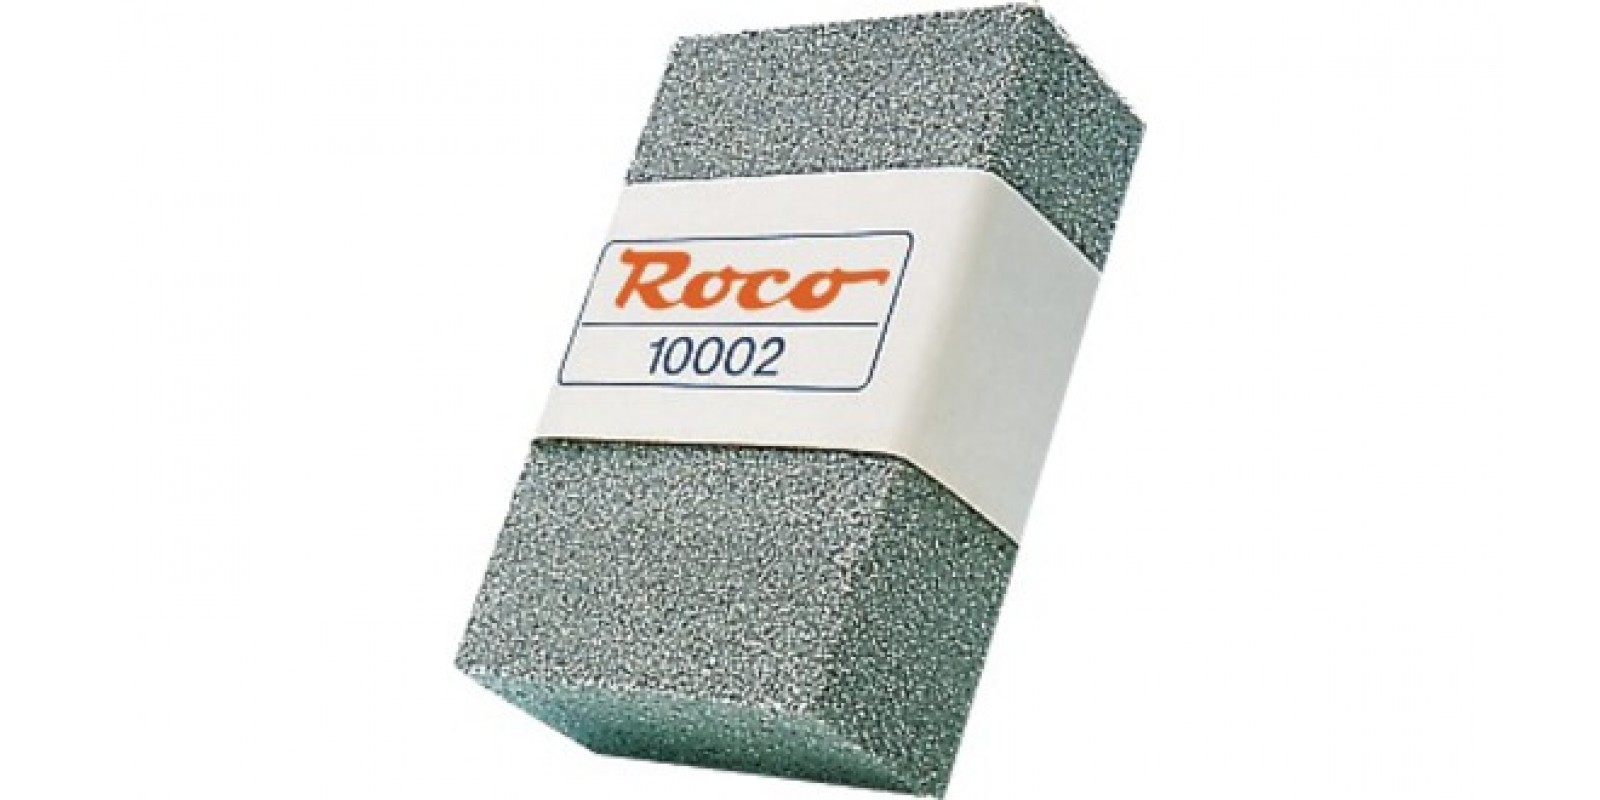 RO10002 - Roco Rubber